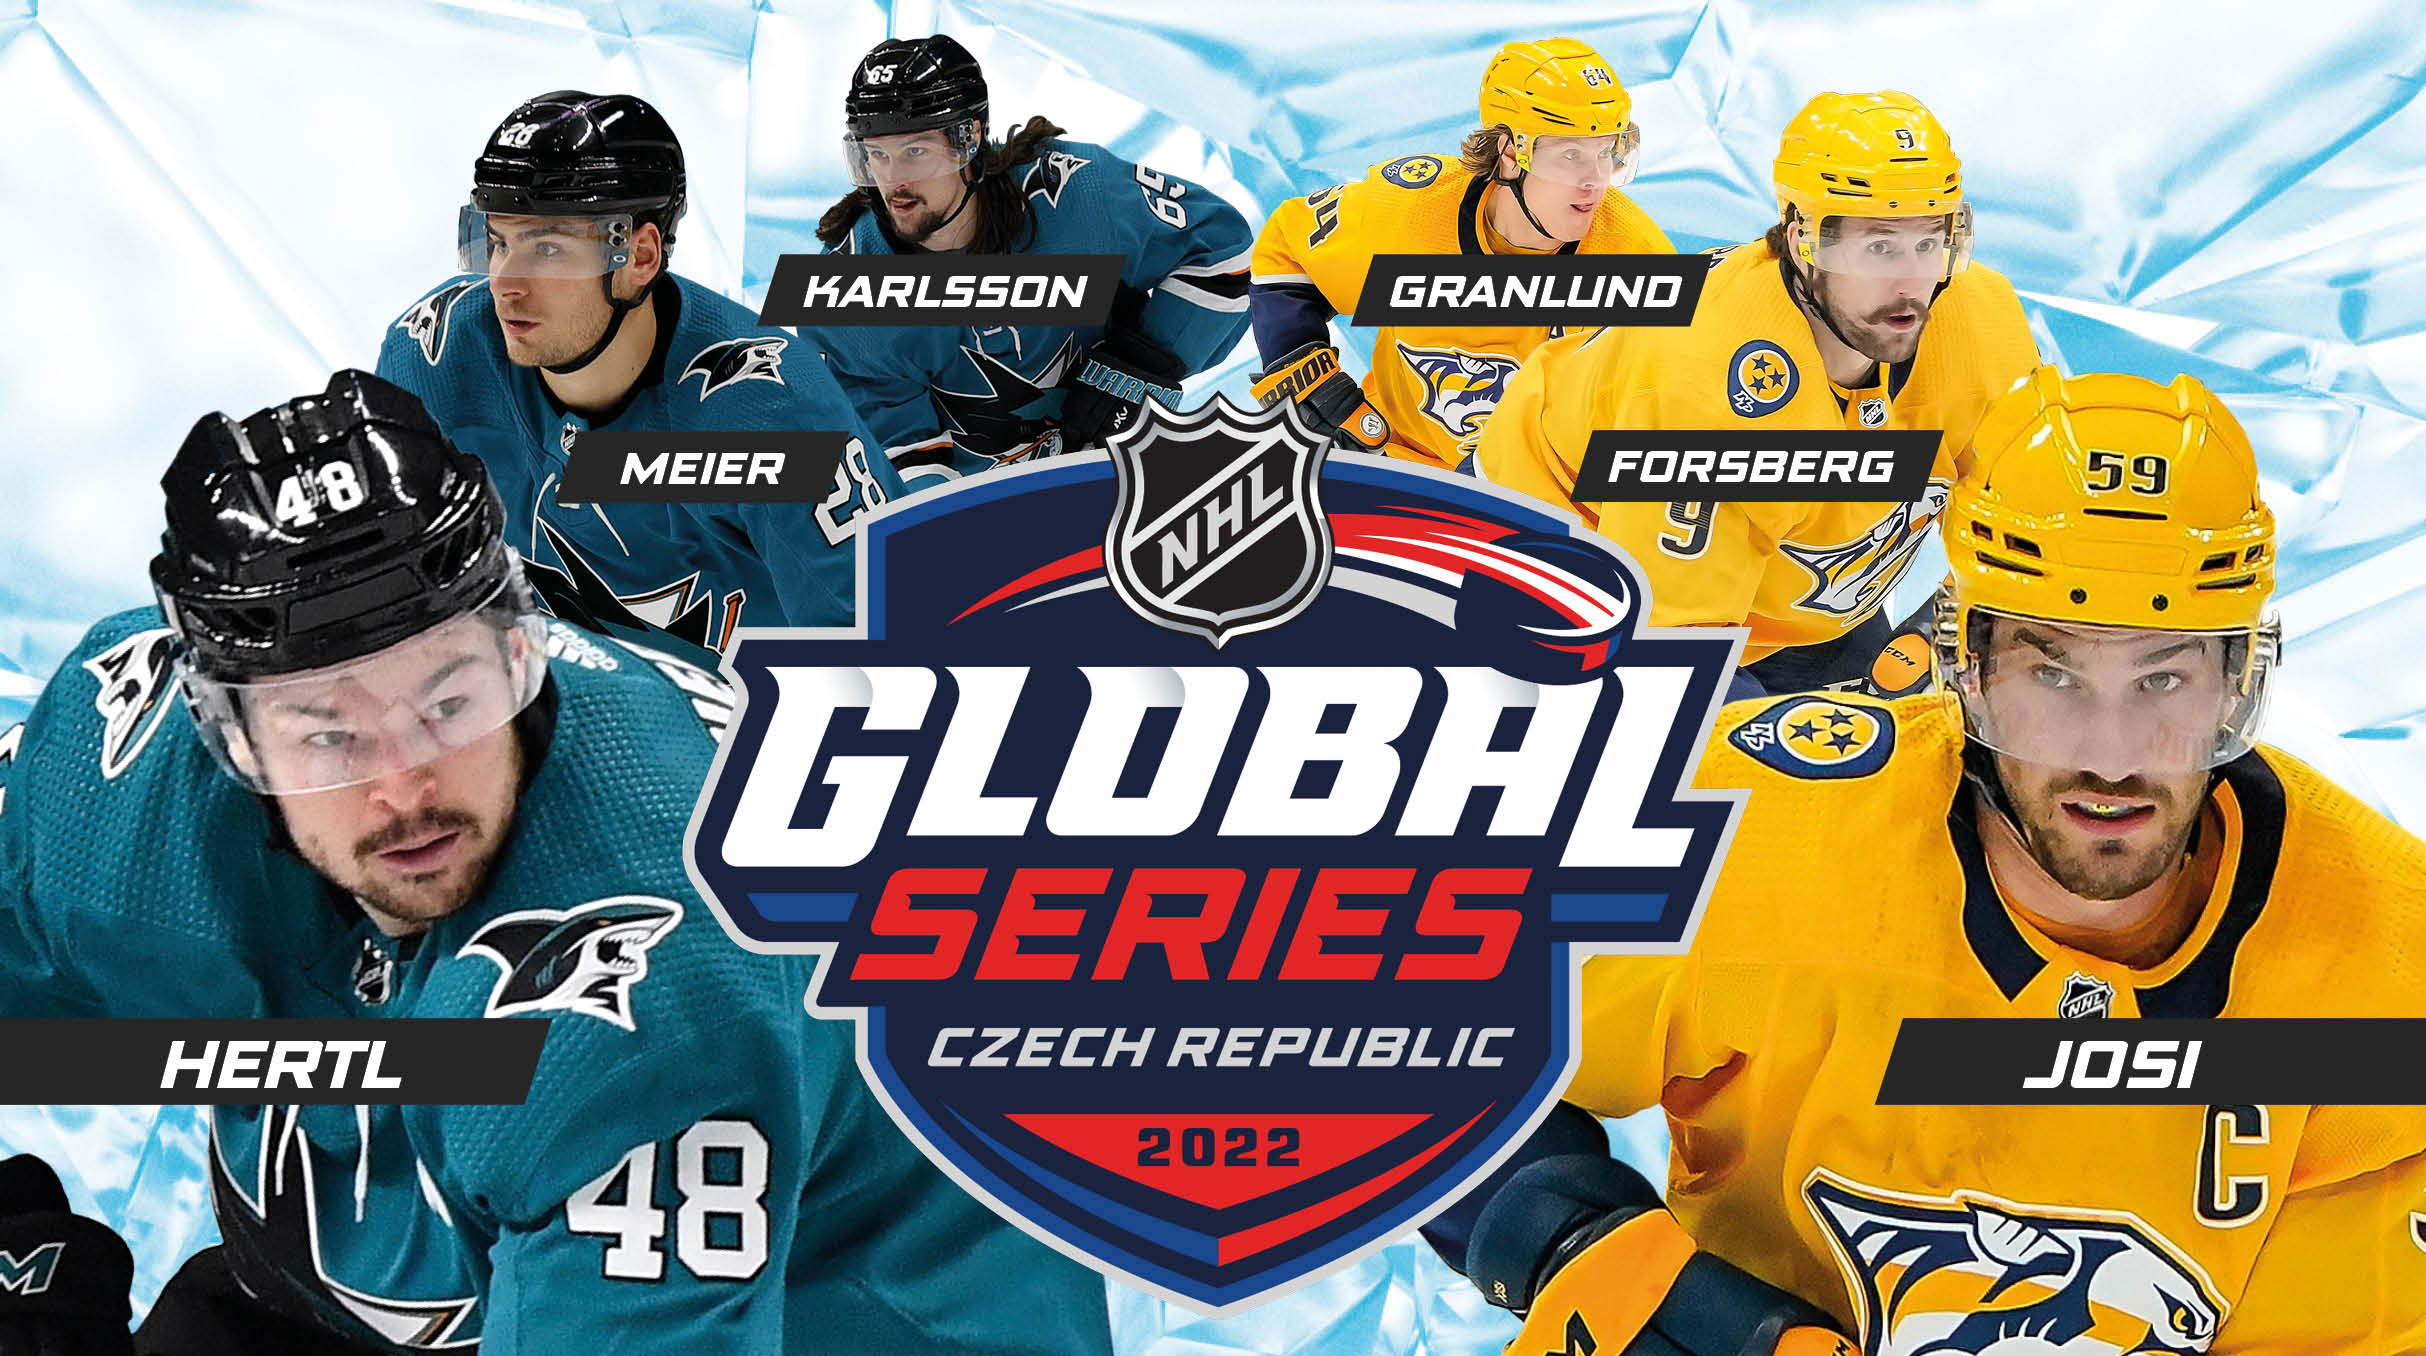 2022 NHL GLOBAL SERIES- Praha O2 arena -O2 arena Praha 9 Českomoravská 2345/17a, Praha 9 19000